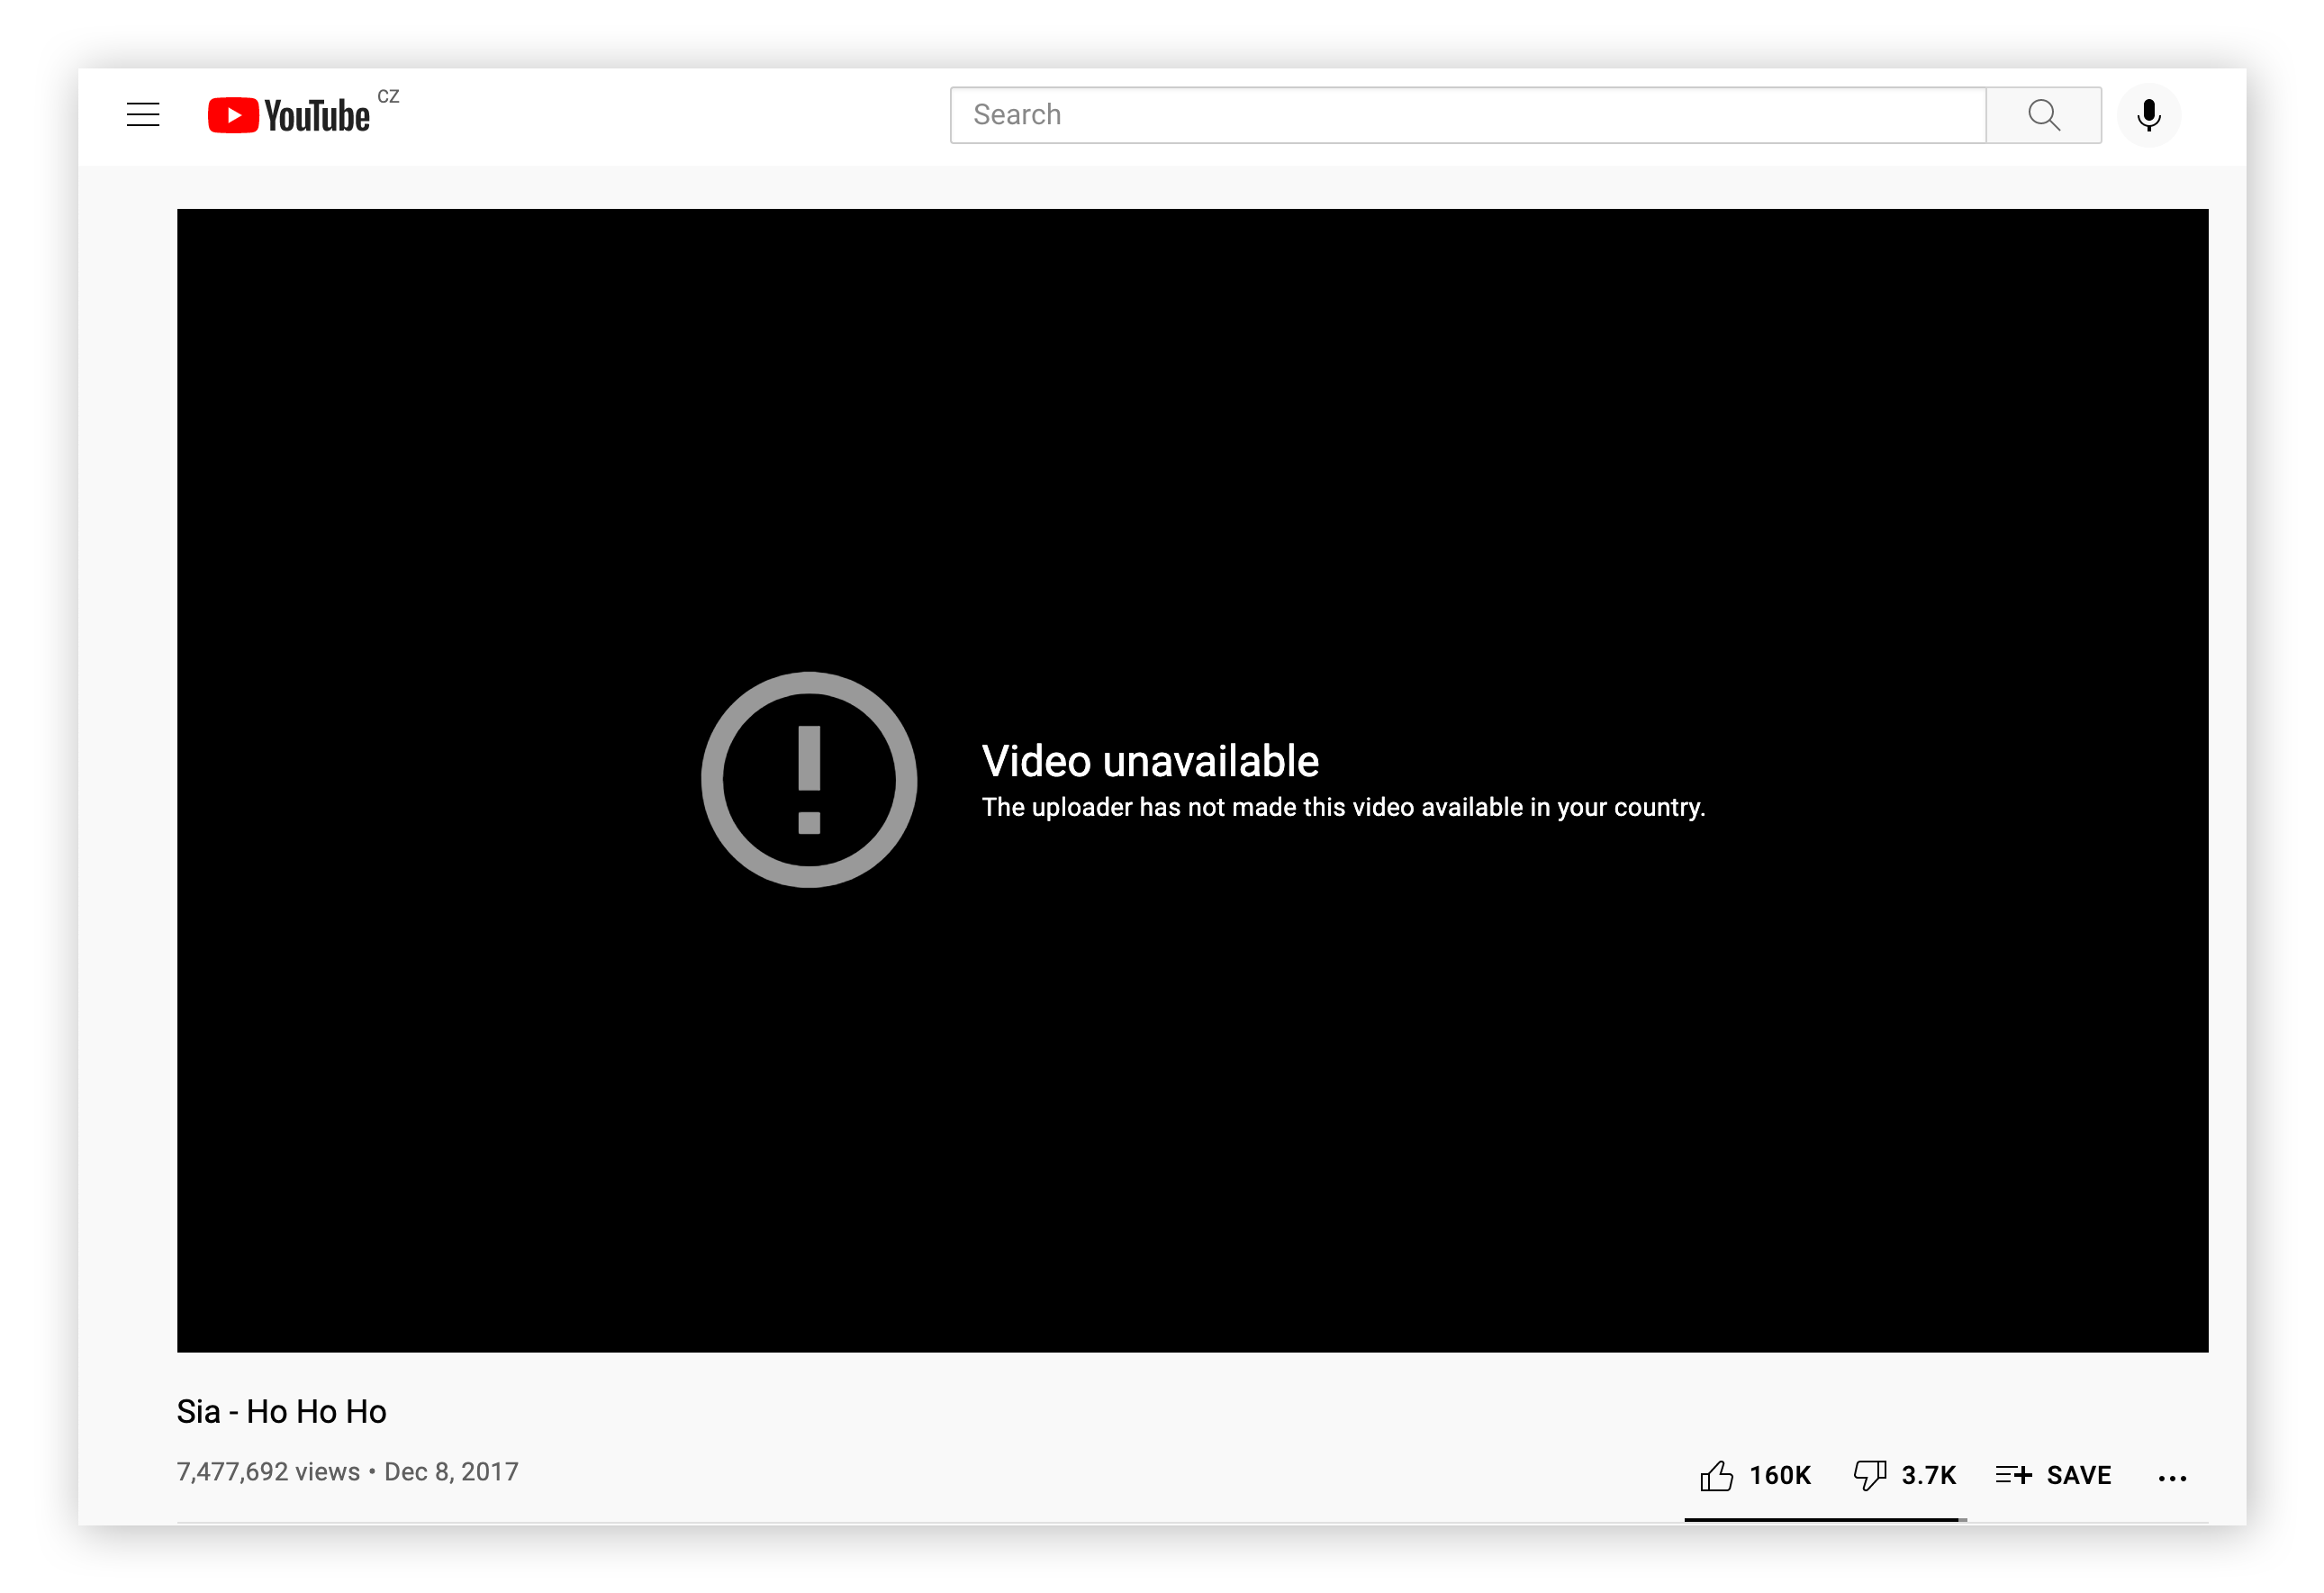 Un ejemplo de un vídeo de YouTube bloqueado debido a restricciones de geolocalización.